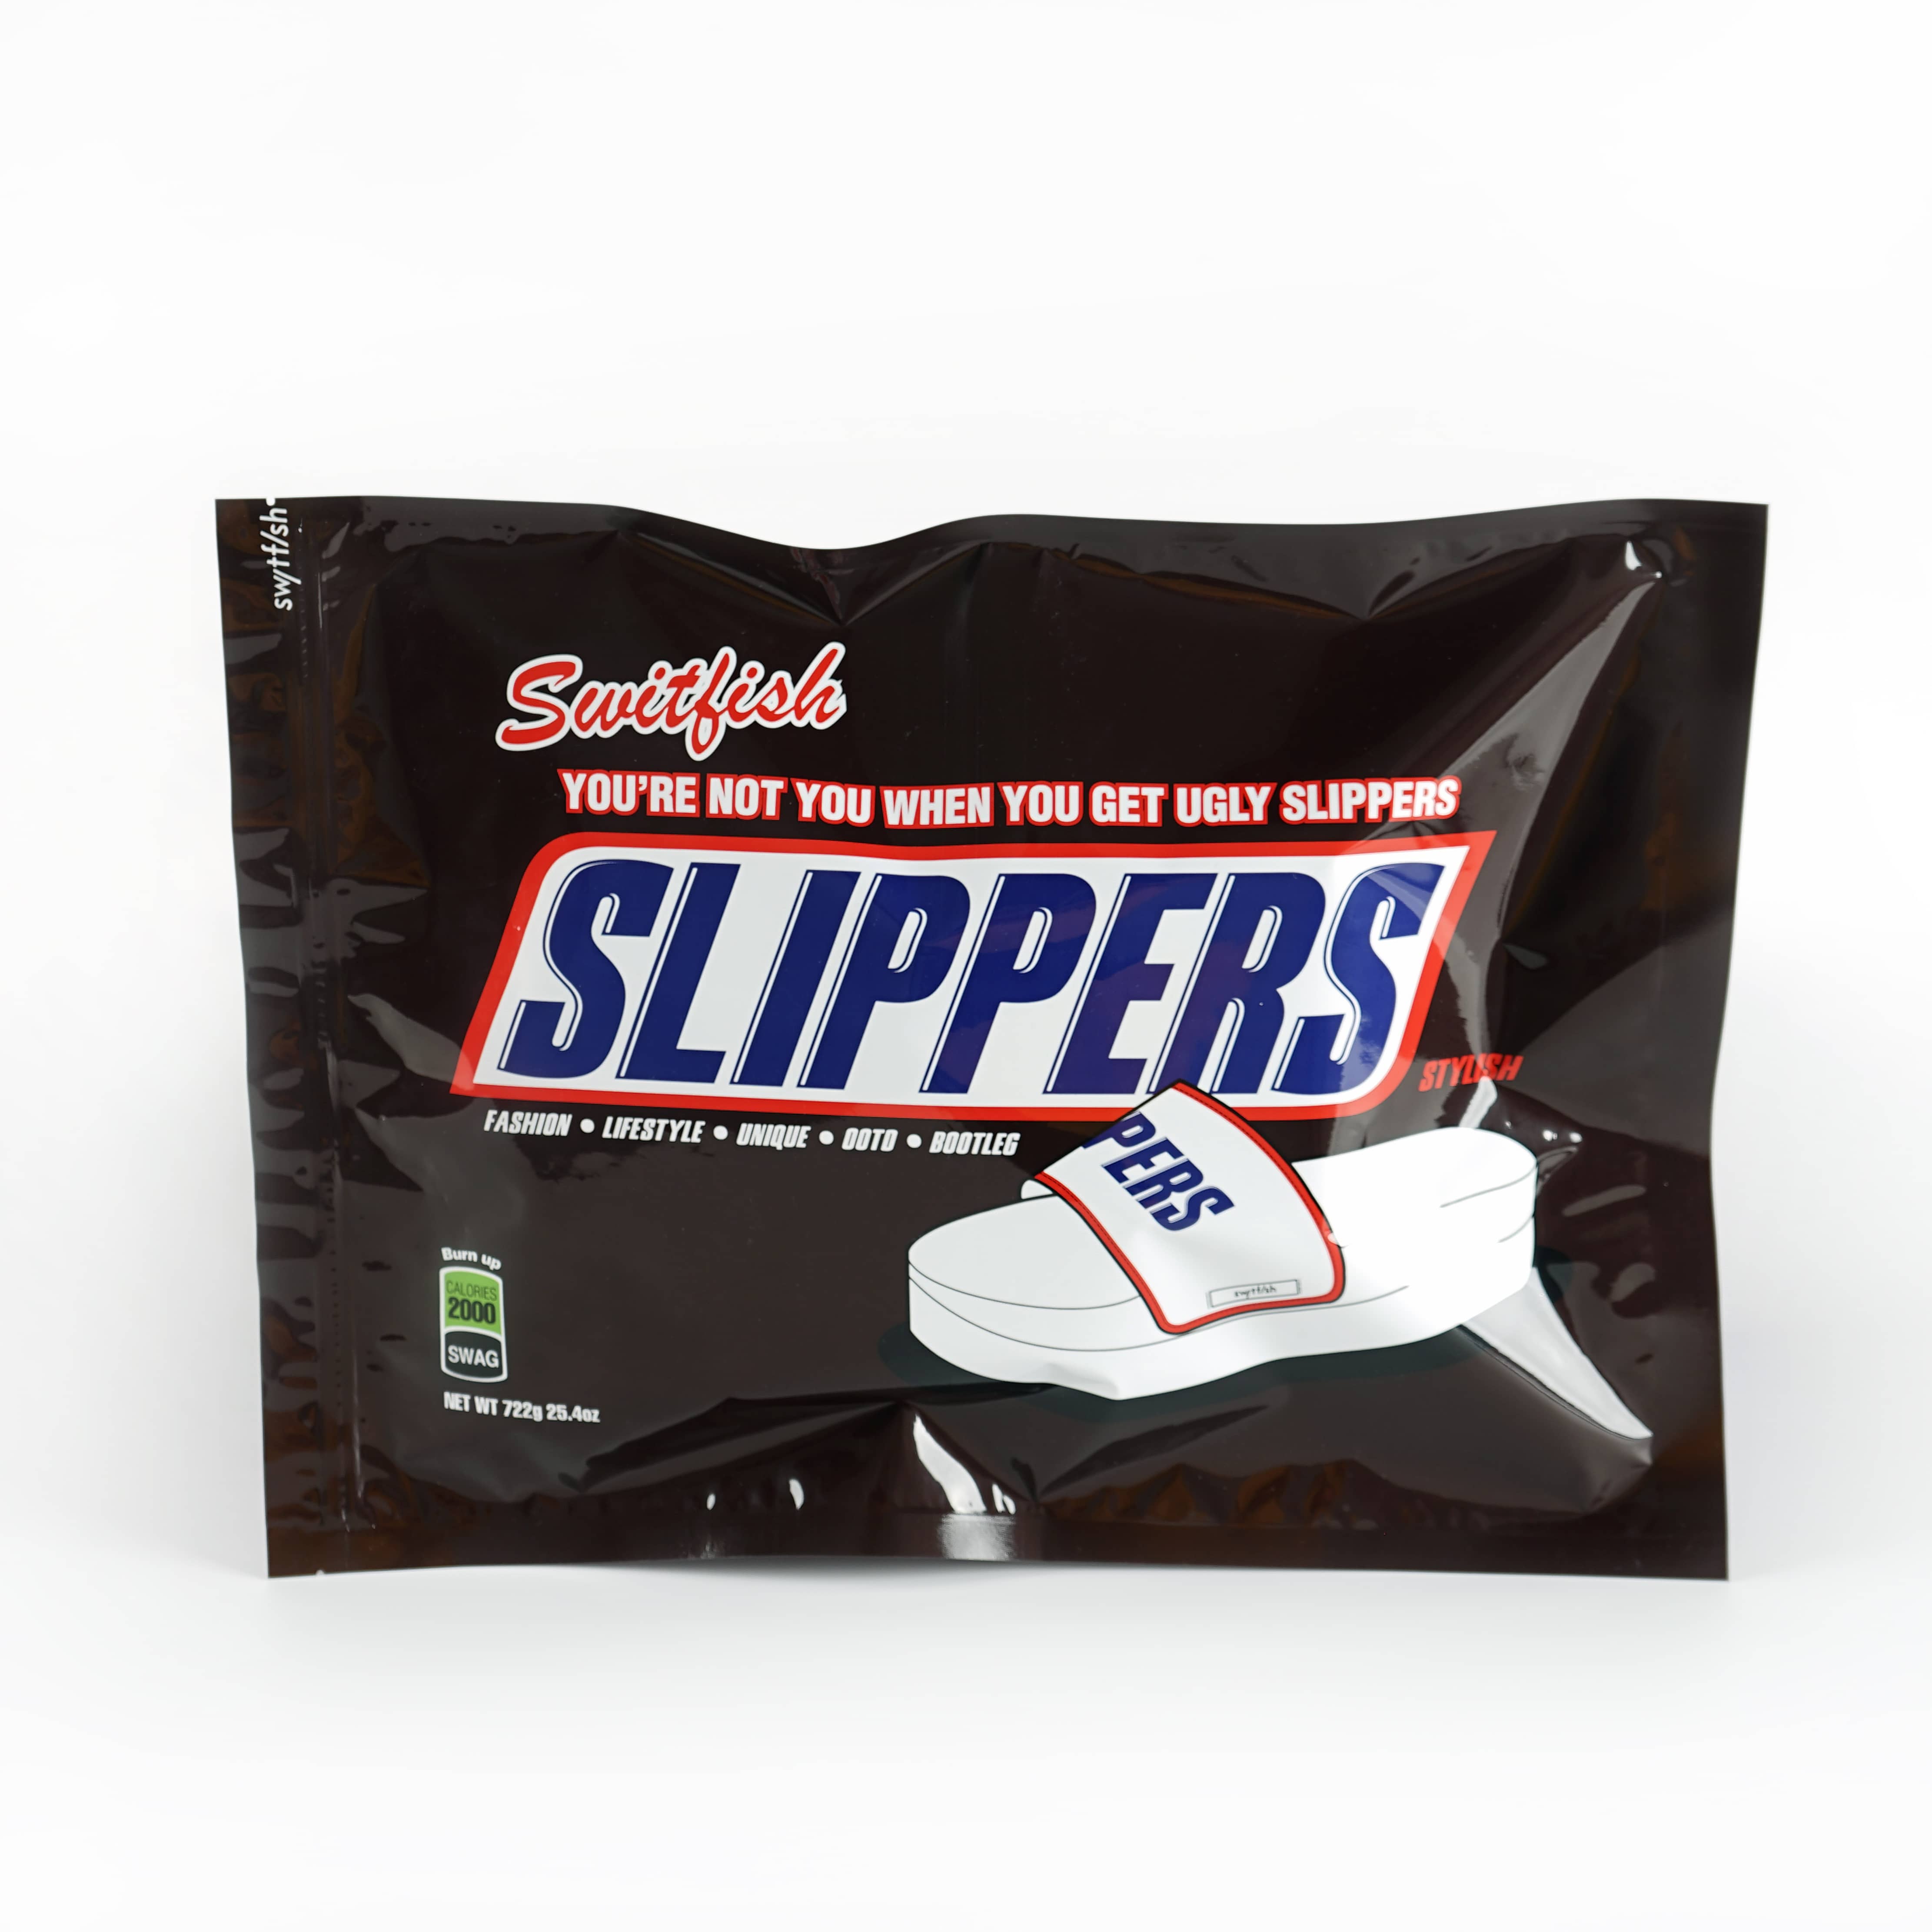 Tufafin Slipper Sweatshirt Zipped Zipper Plastic Packaging Jakunkuna